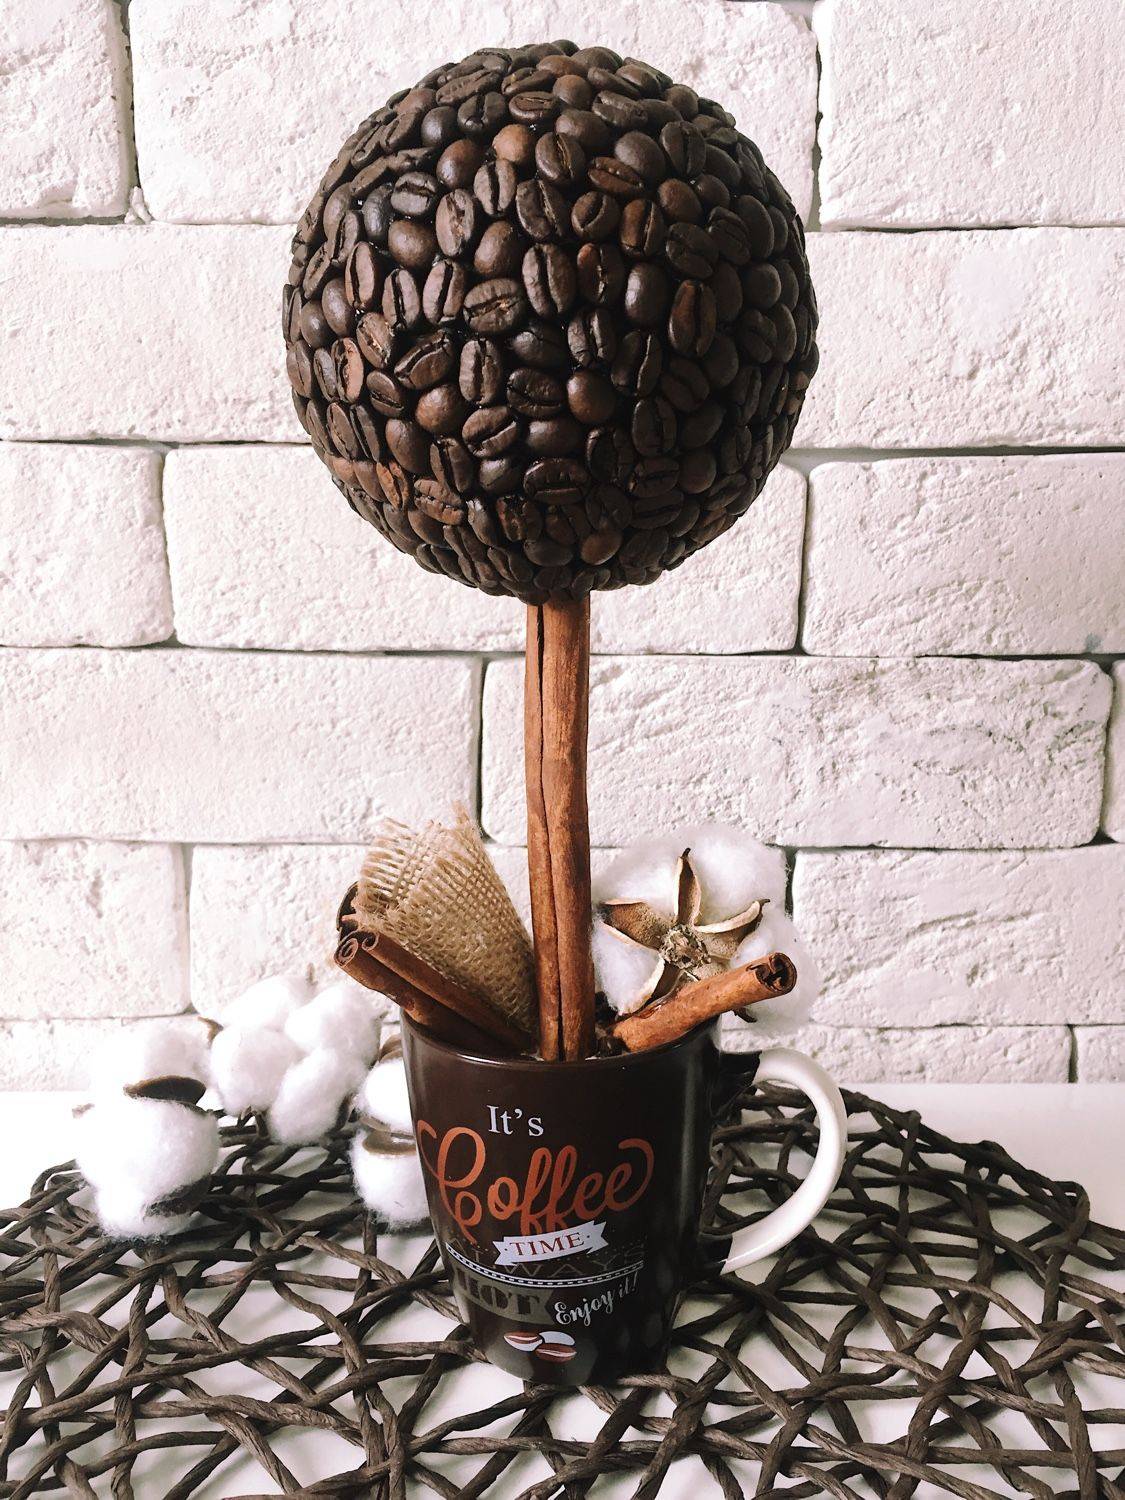 Топиарий из кофе: фото своими руками, кофейное дерево мастер класс, как сделать пошаговая инструкция, с чашкой, видео